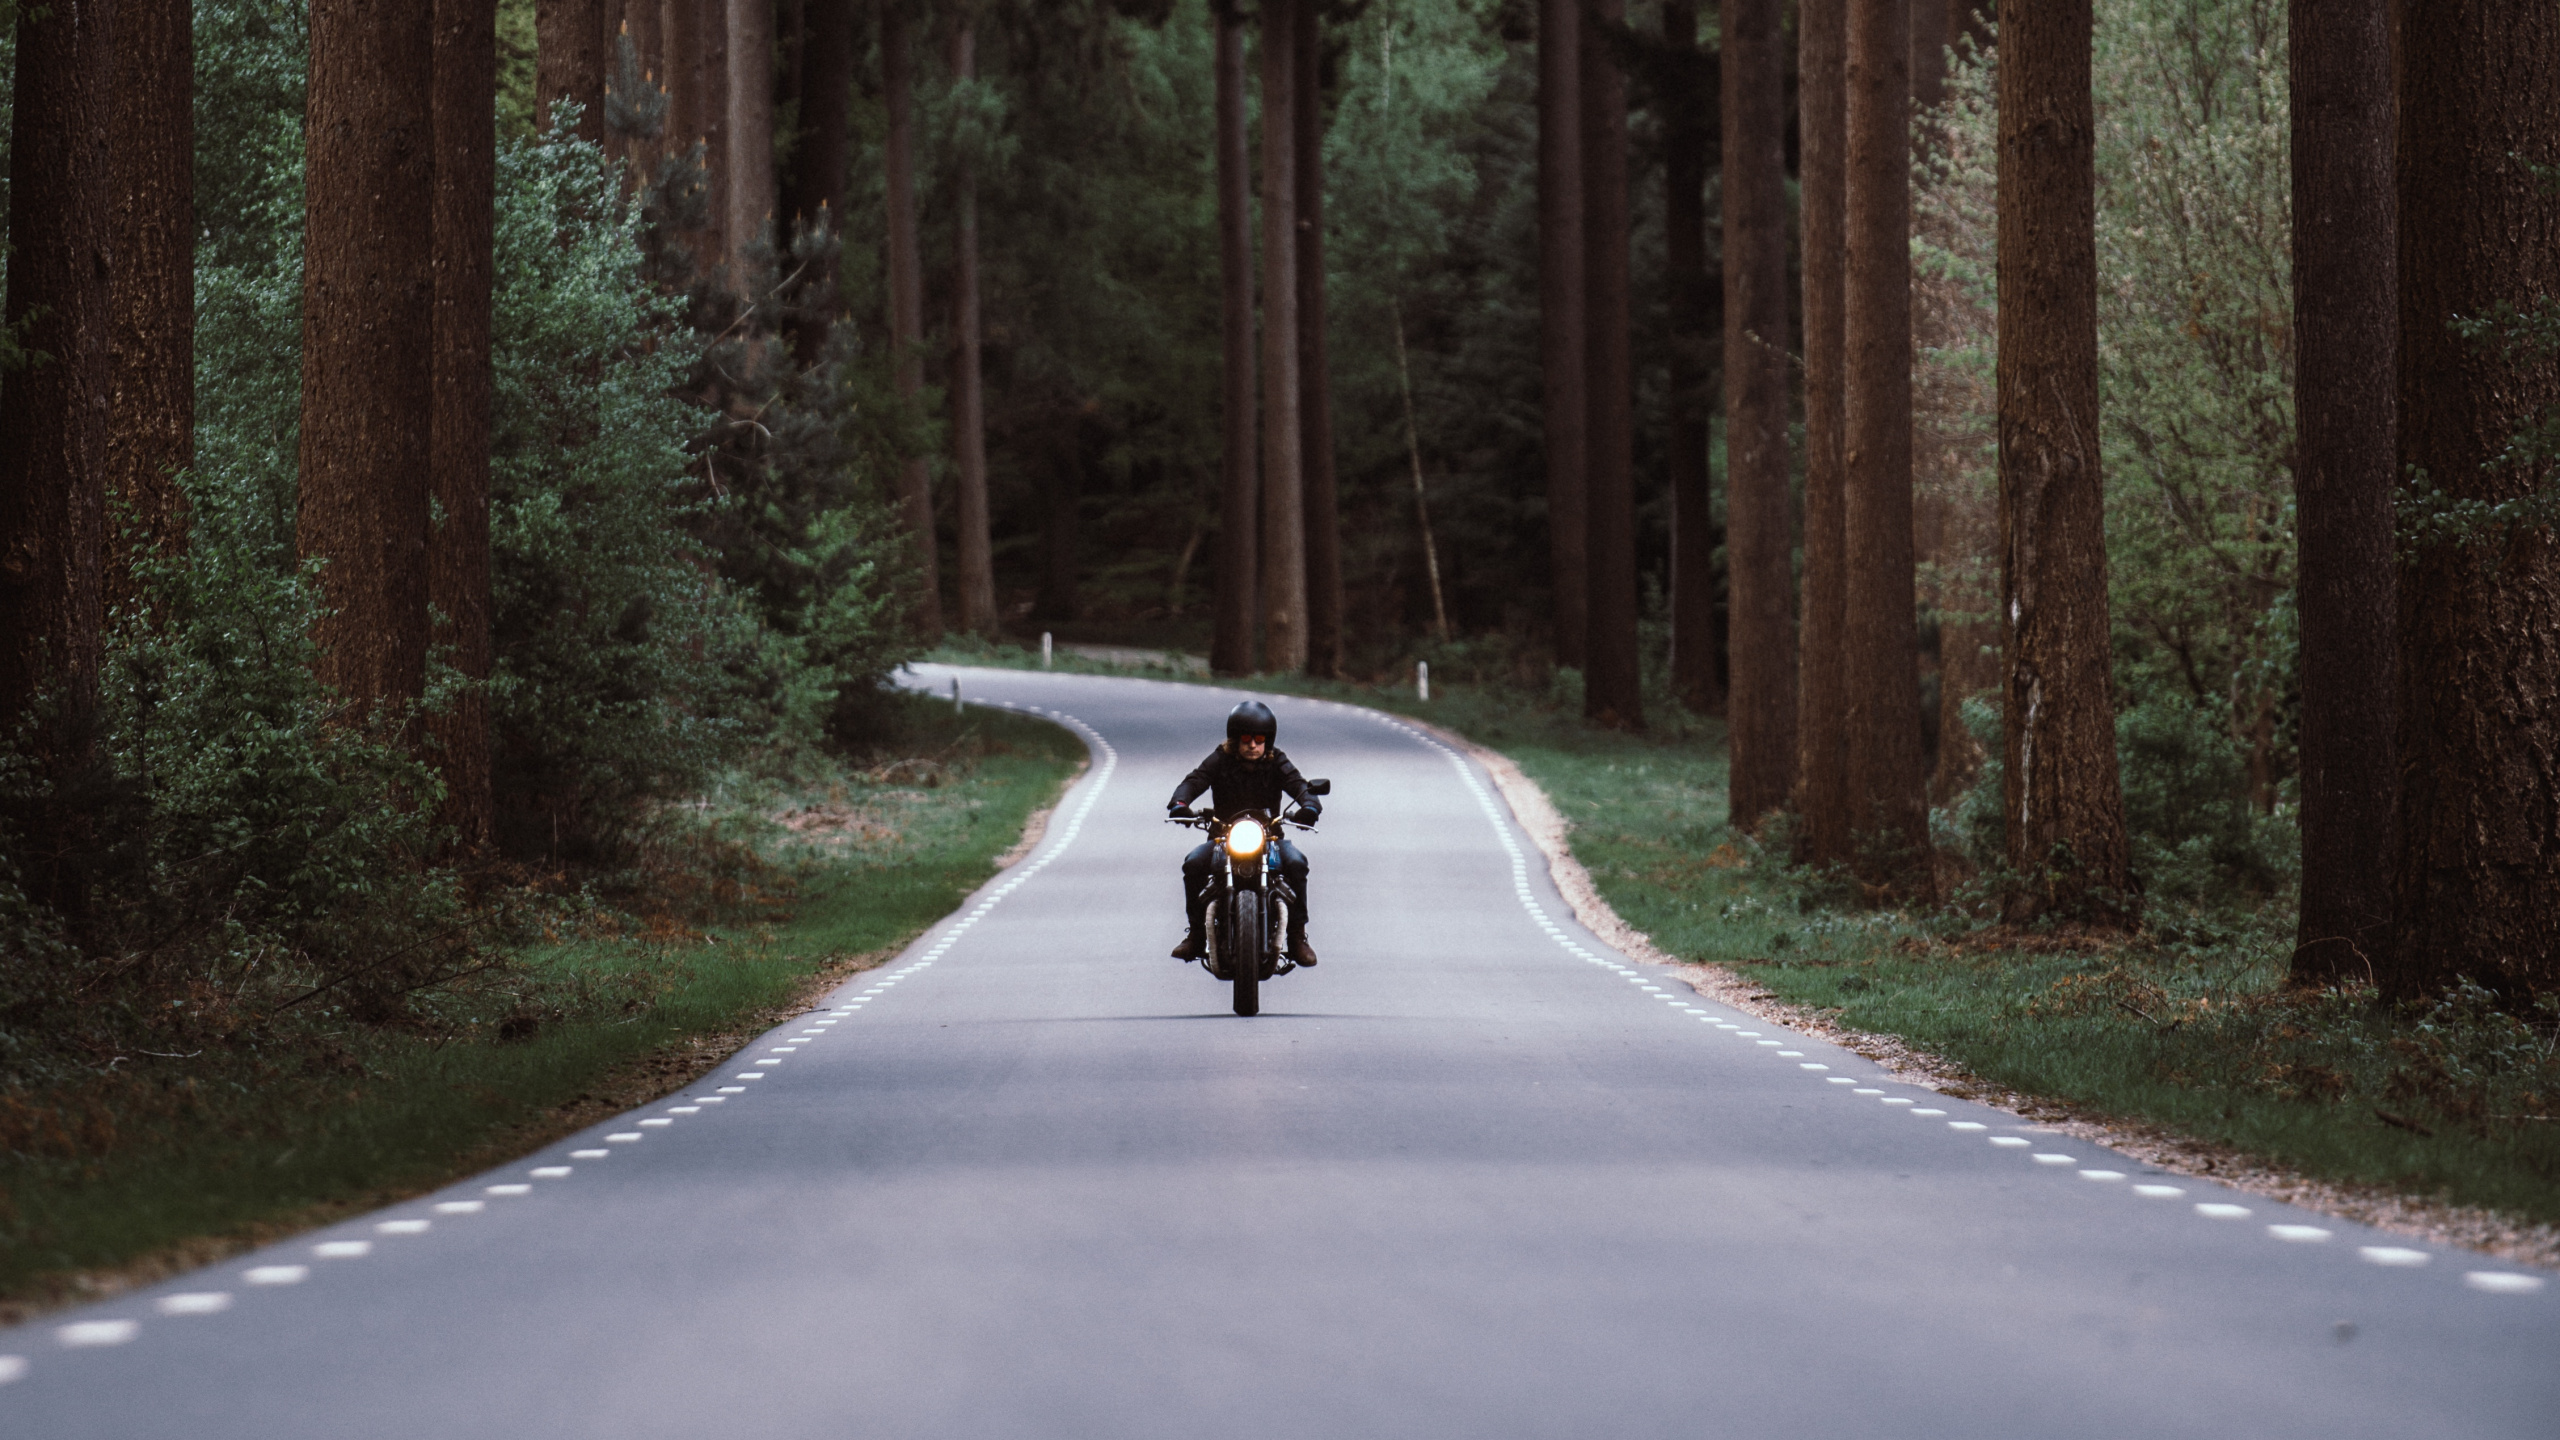 Persona en Motocicleta en la Carretera Entre Árboles Durante el Día. Wallpaper in 2560x1440 Resolution